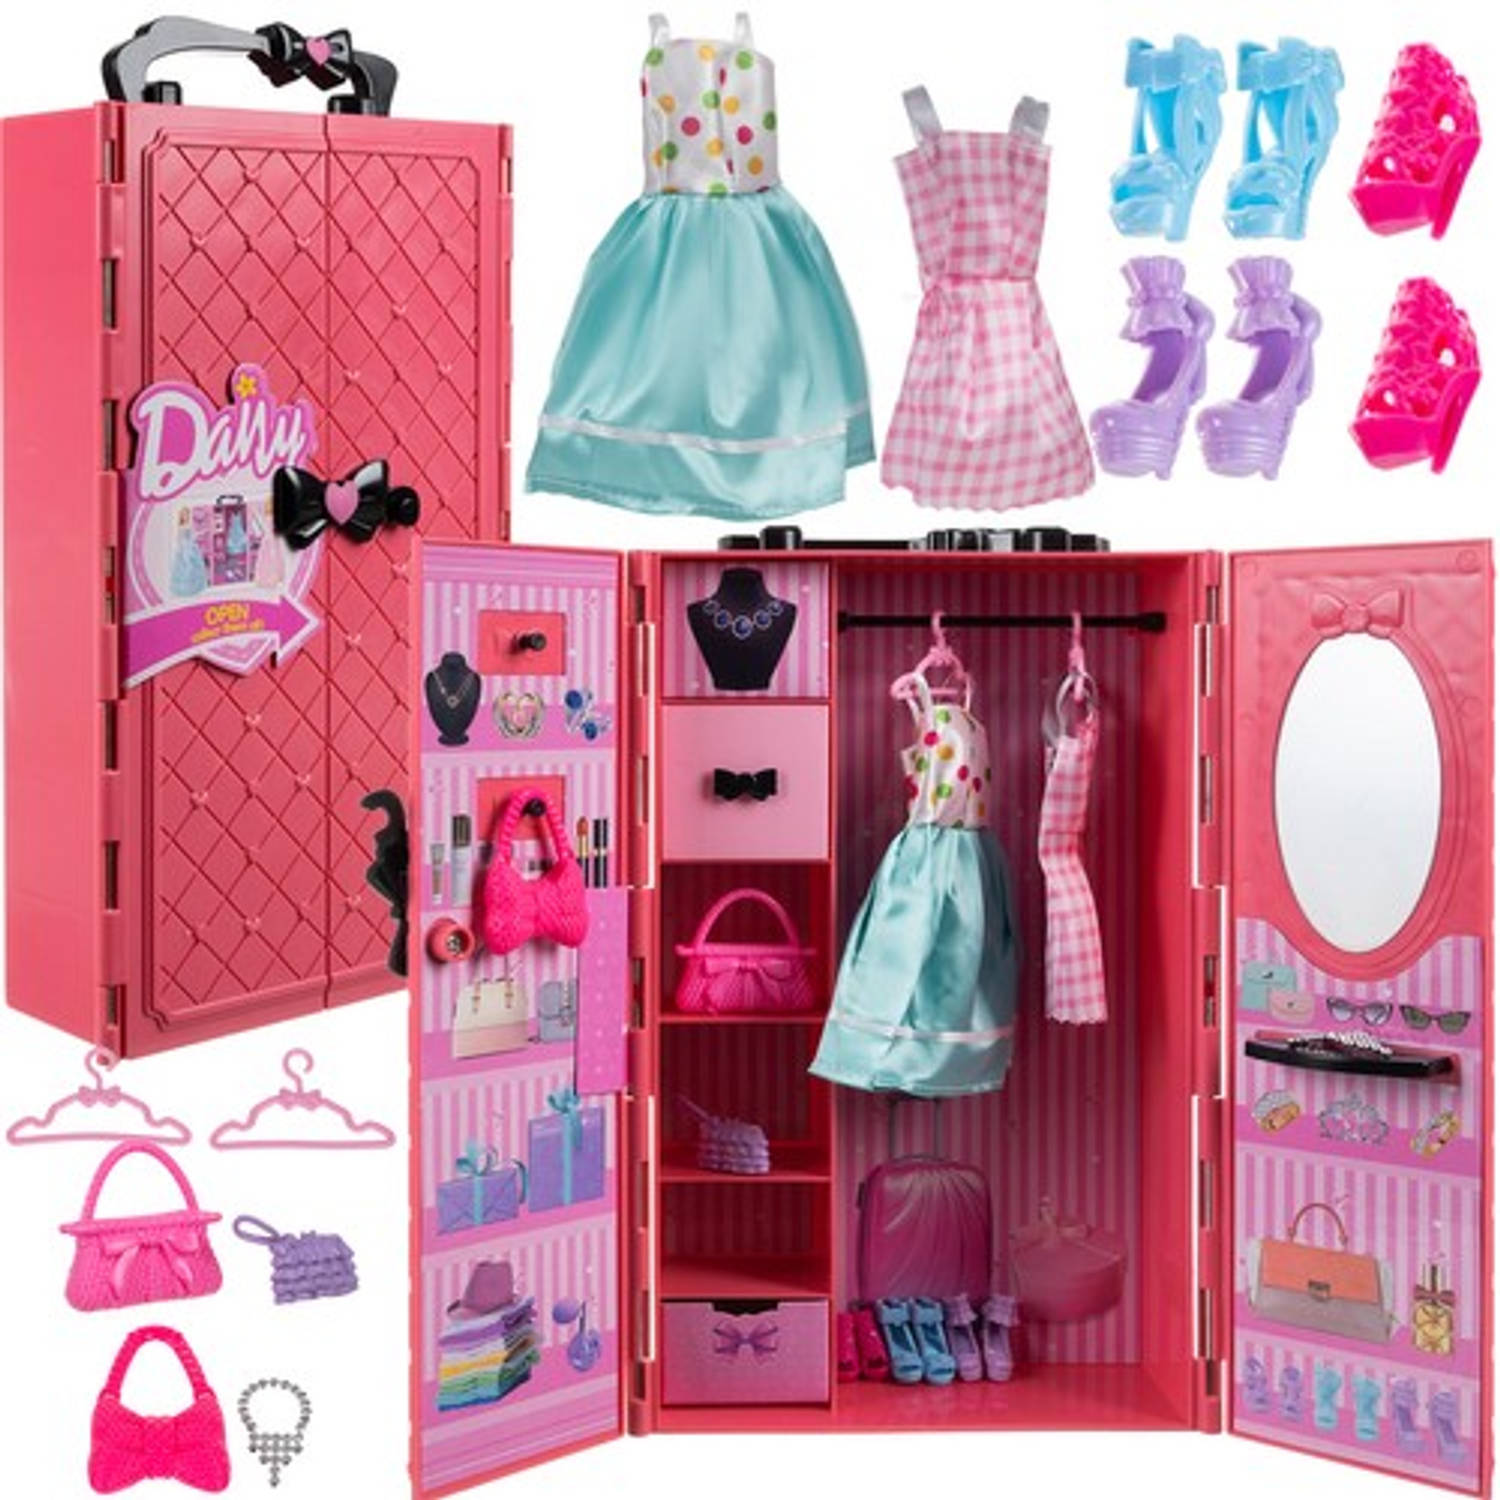 Poppen kledingkast en garderobe met accessoires - Voor in een poppenhuis - Jurk - Schoenen - Handtas - Roze